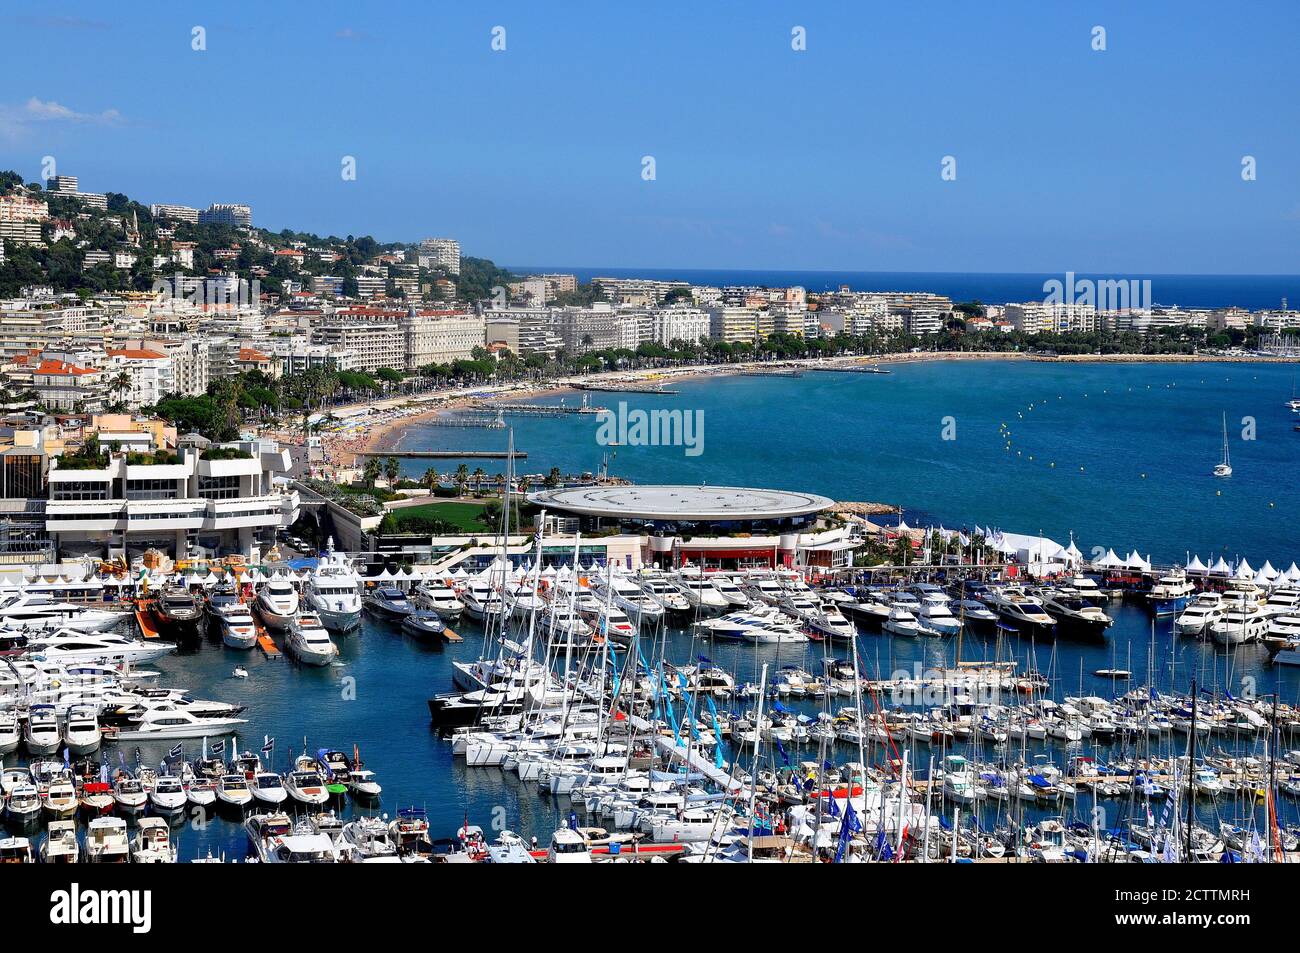 Francia, costa azzurra, cannes, la città del cinema con il suo famoso viale Croisette e porto turistico, una magnifica baia con le isole Lerins. Foto Stock